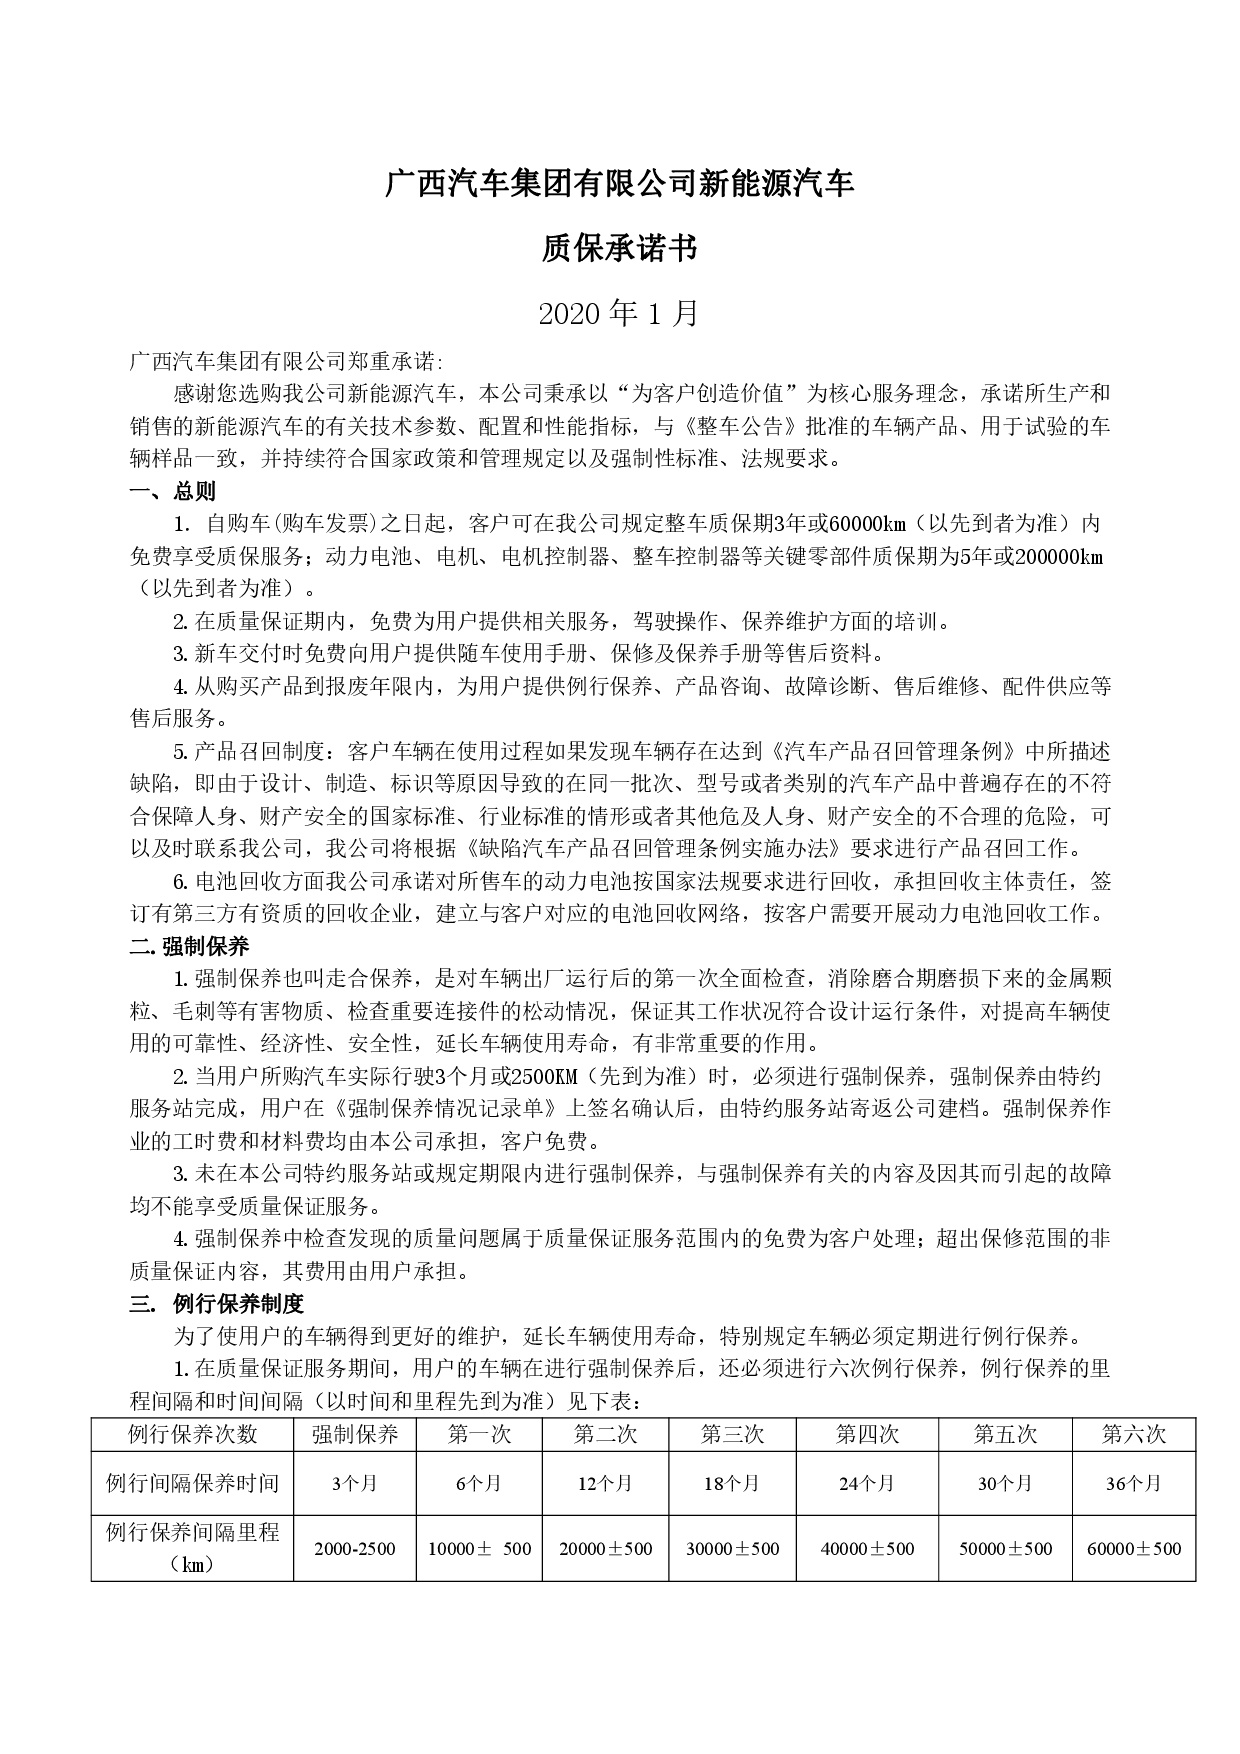 广西汽车集团新能源汽车售后服务公开承诺书（修订版）-001.jpg